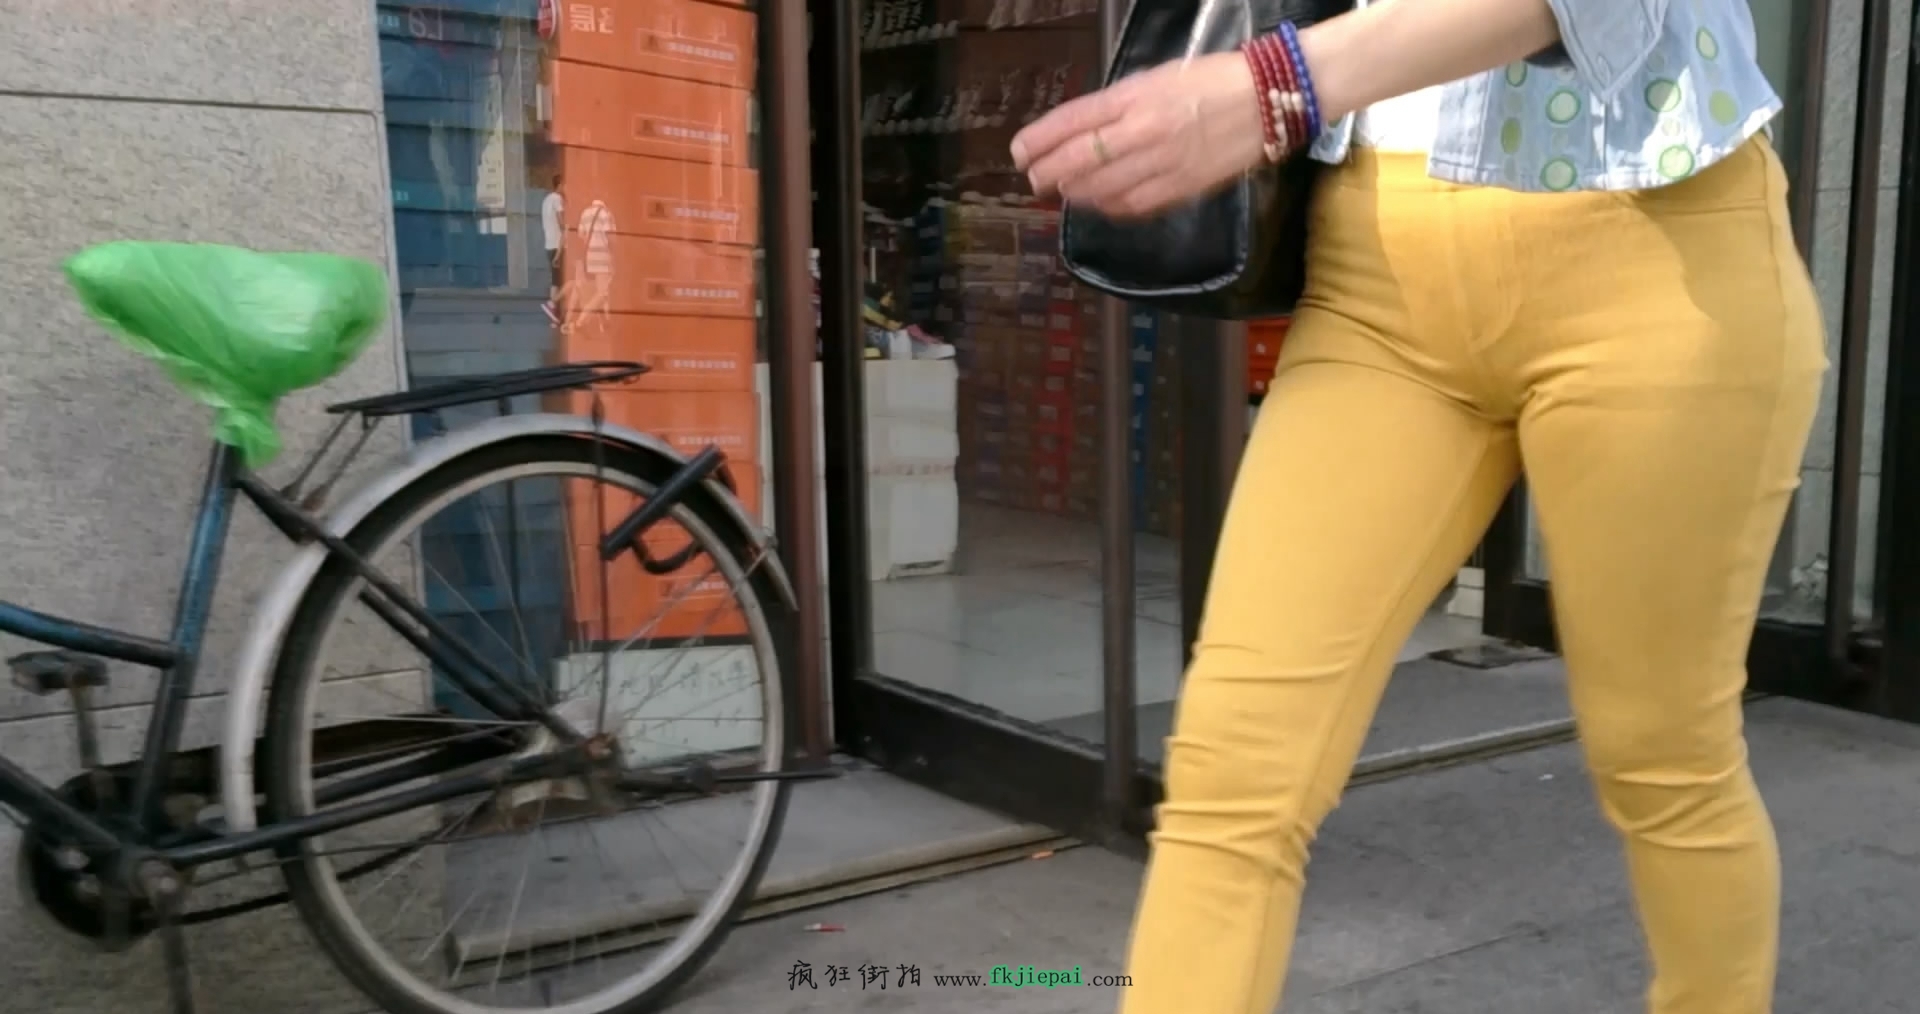 [牛仔裤] 三角紧绷的黄裤少妇 